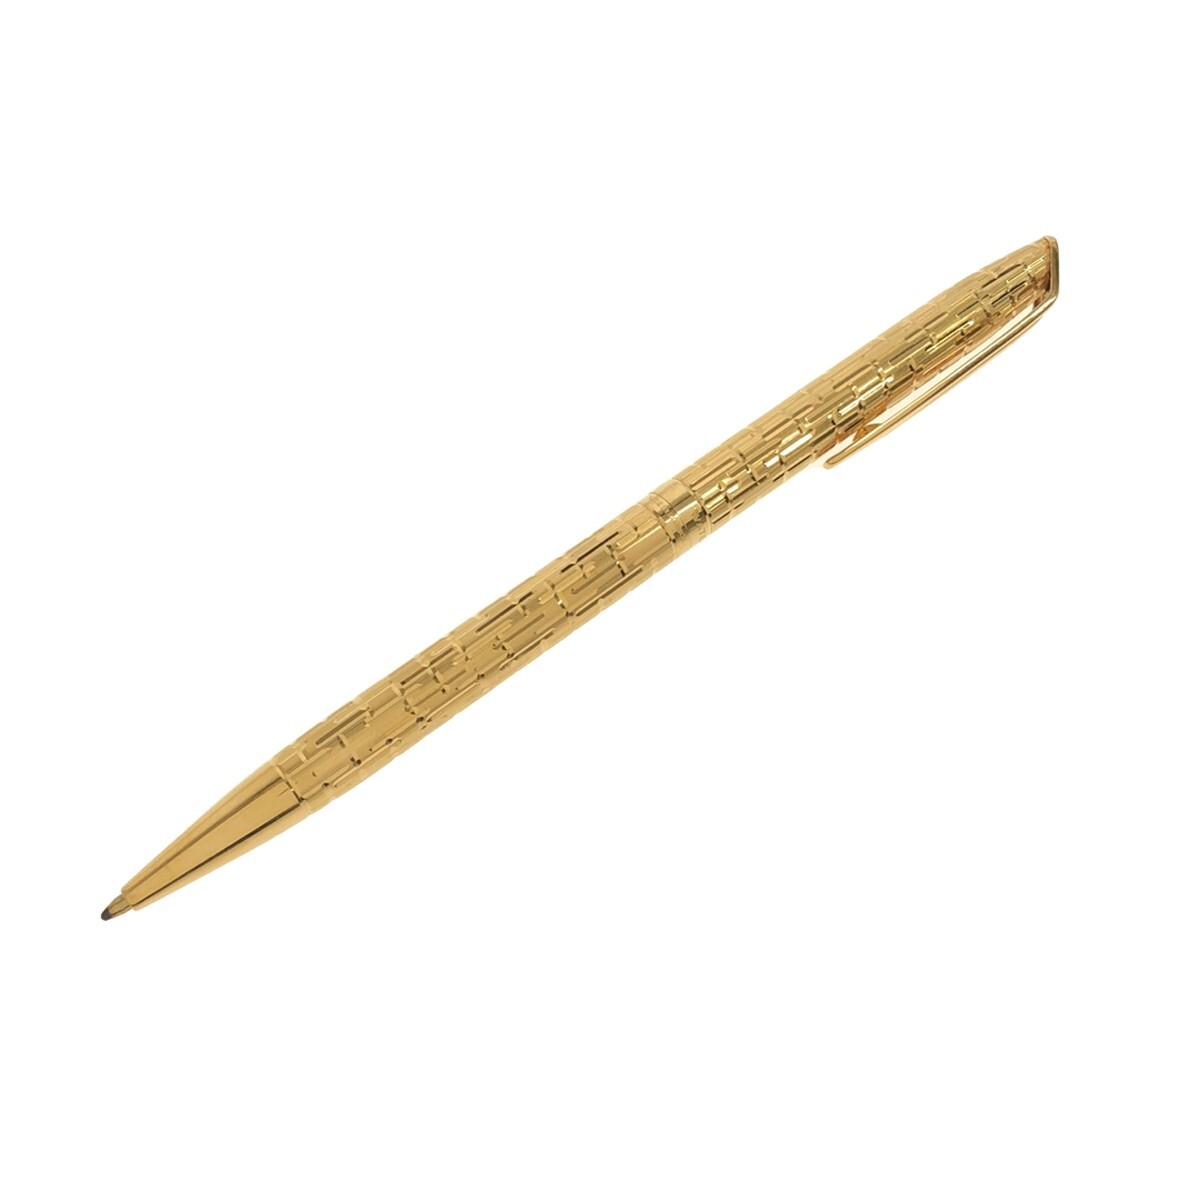 【WATERMAN 美品2本まとめ】万年筆 C/F PLAQUE OR G ゴールドカラー ペン先 18K 750 + ボールペン ツイスト式 フランス製 筆記用具 J1193_画像3